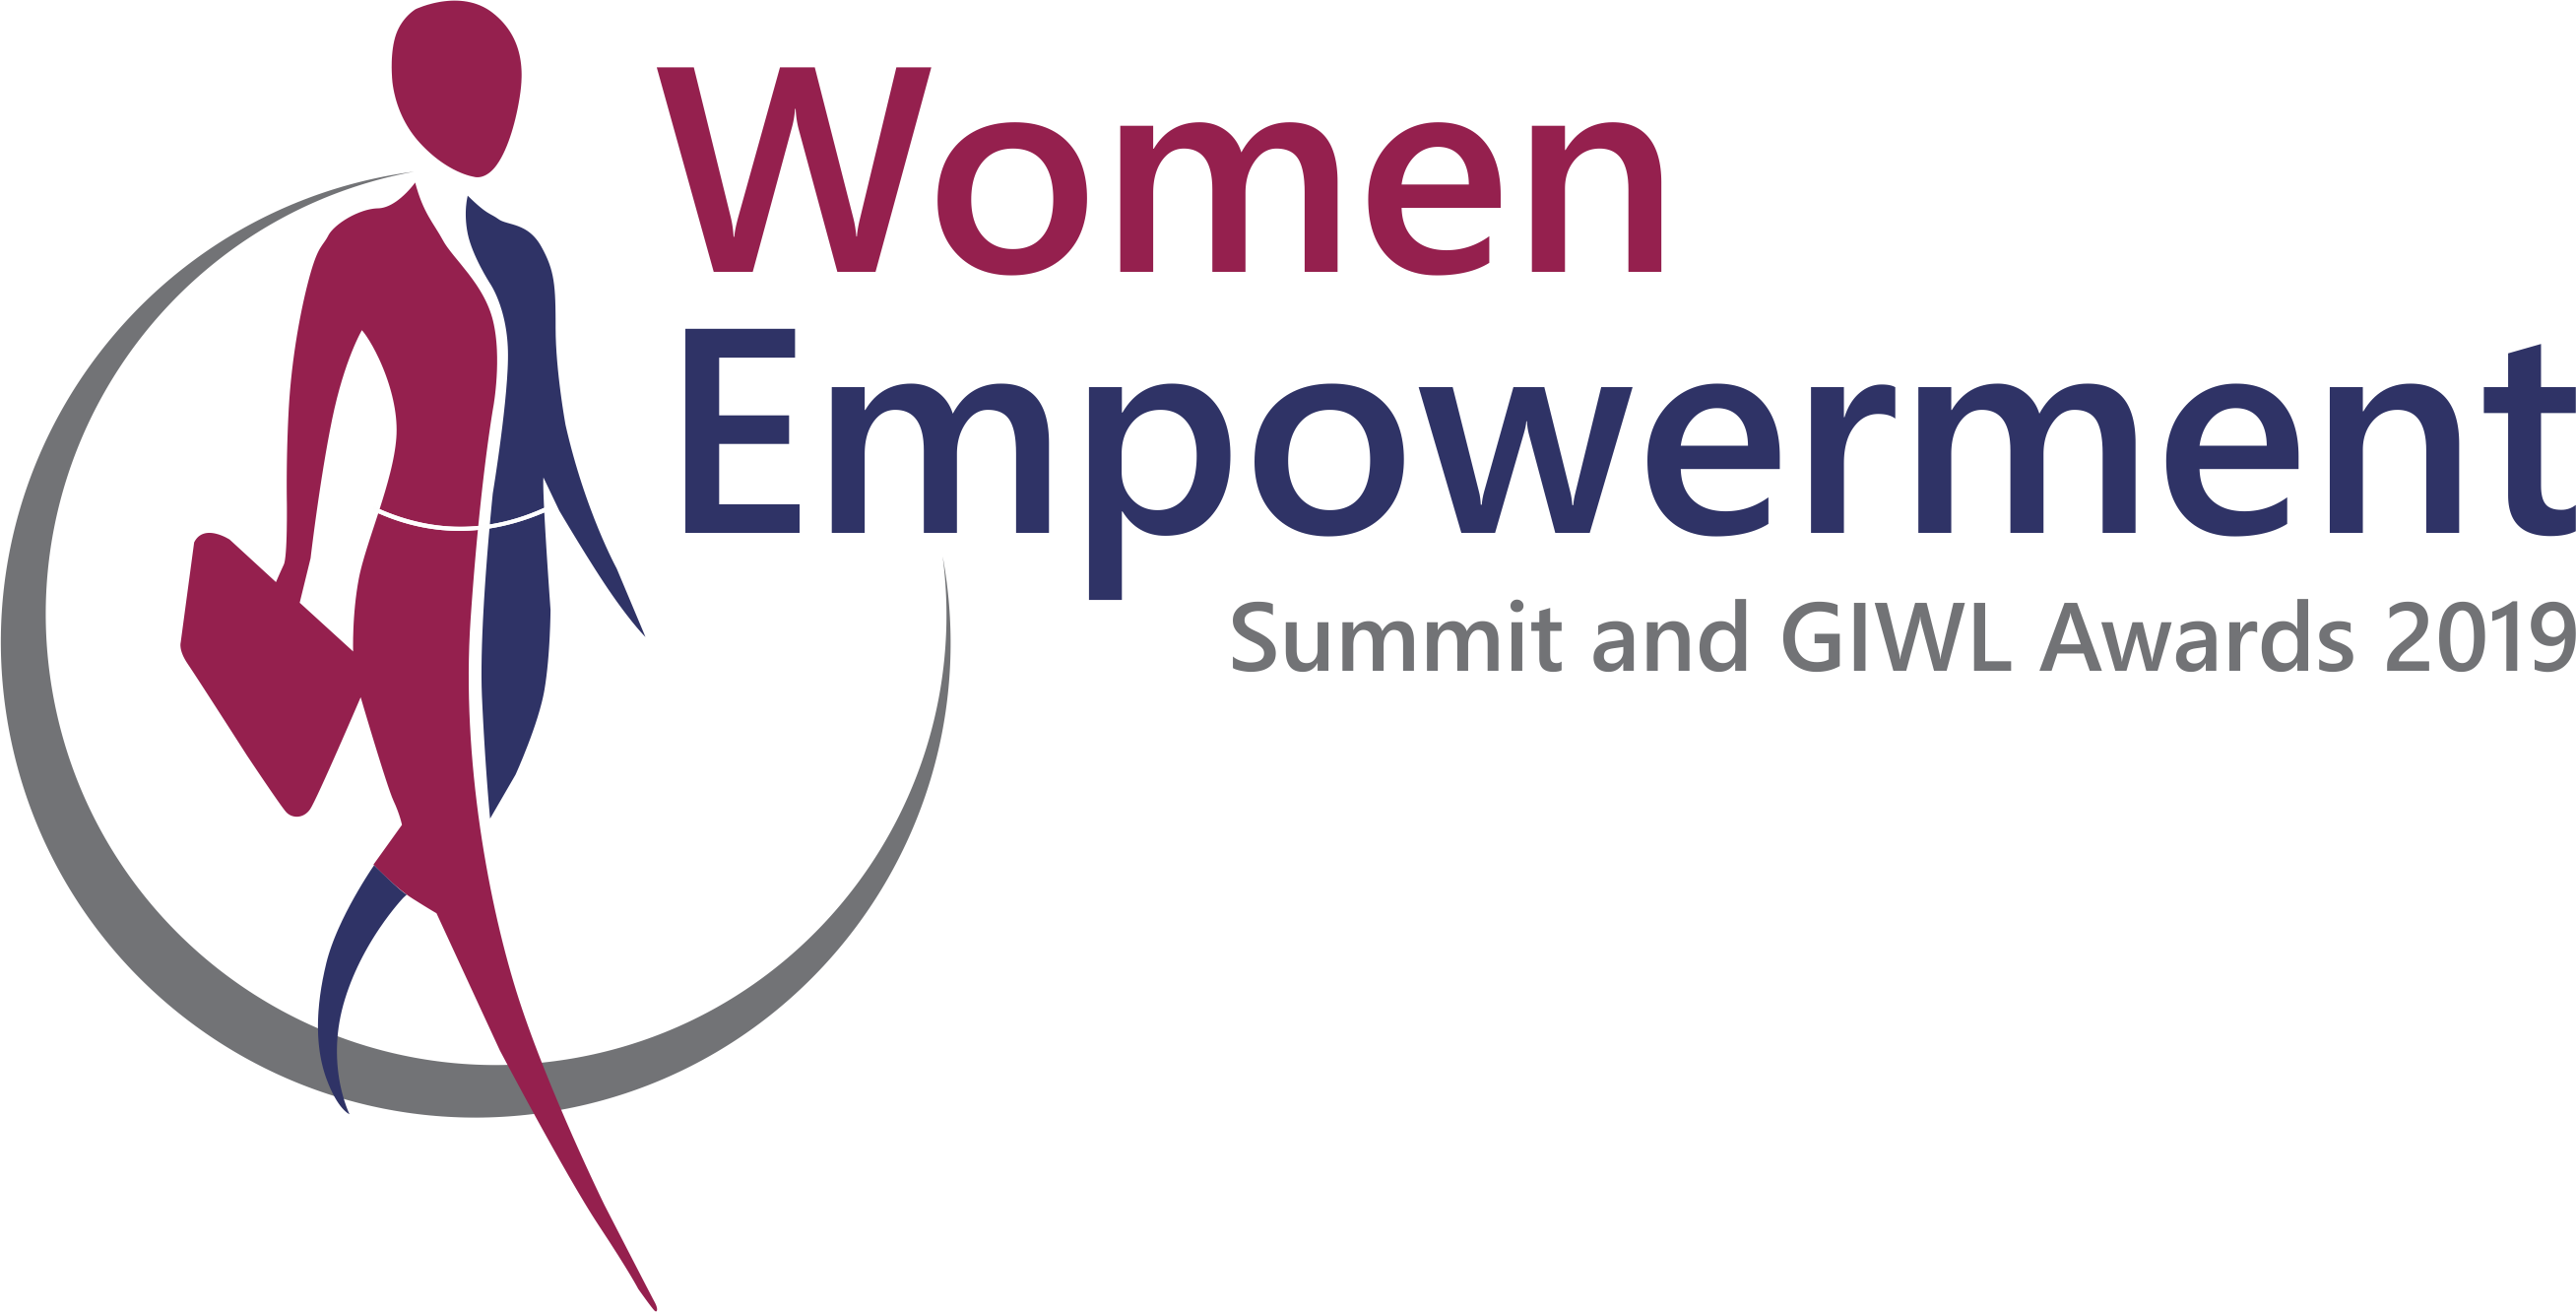 Women Empowerment Summit and GIWL Awards 2019